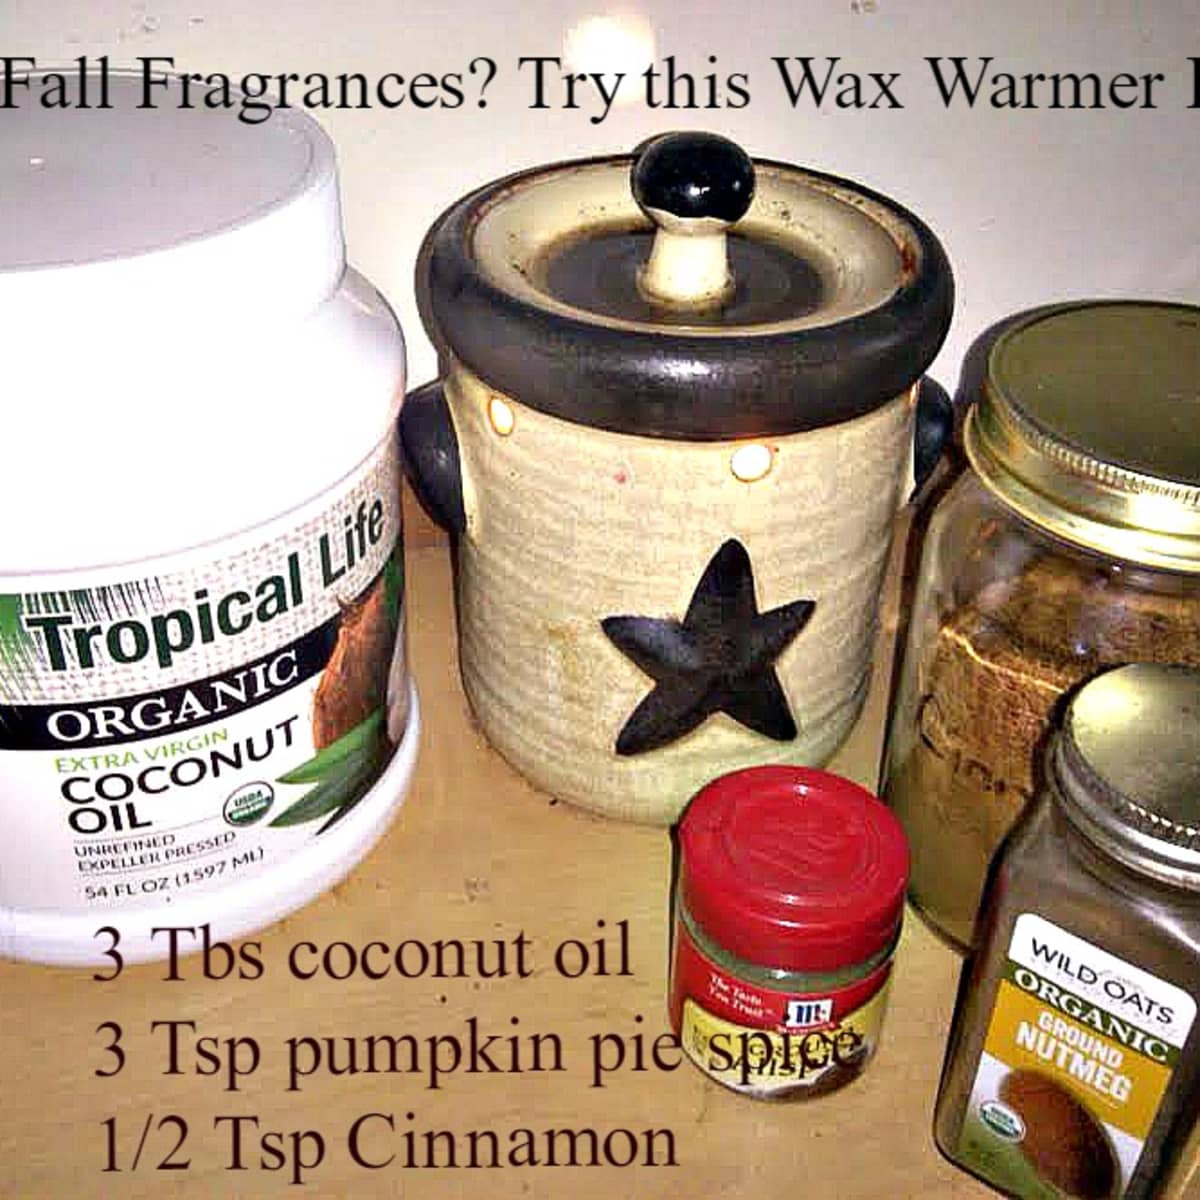 DIY Wax Warmer Hack  Diy wax, Diy candle wax warmer, Wax warmer